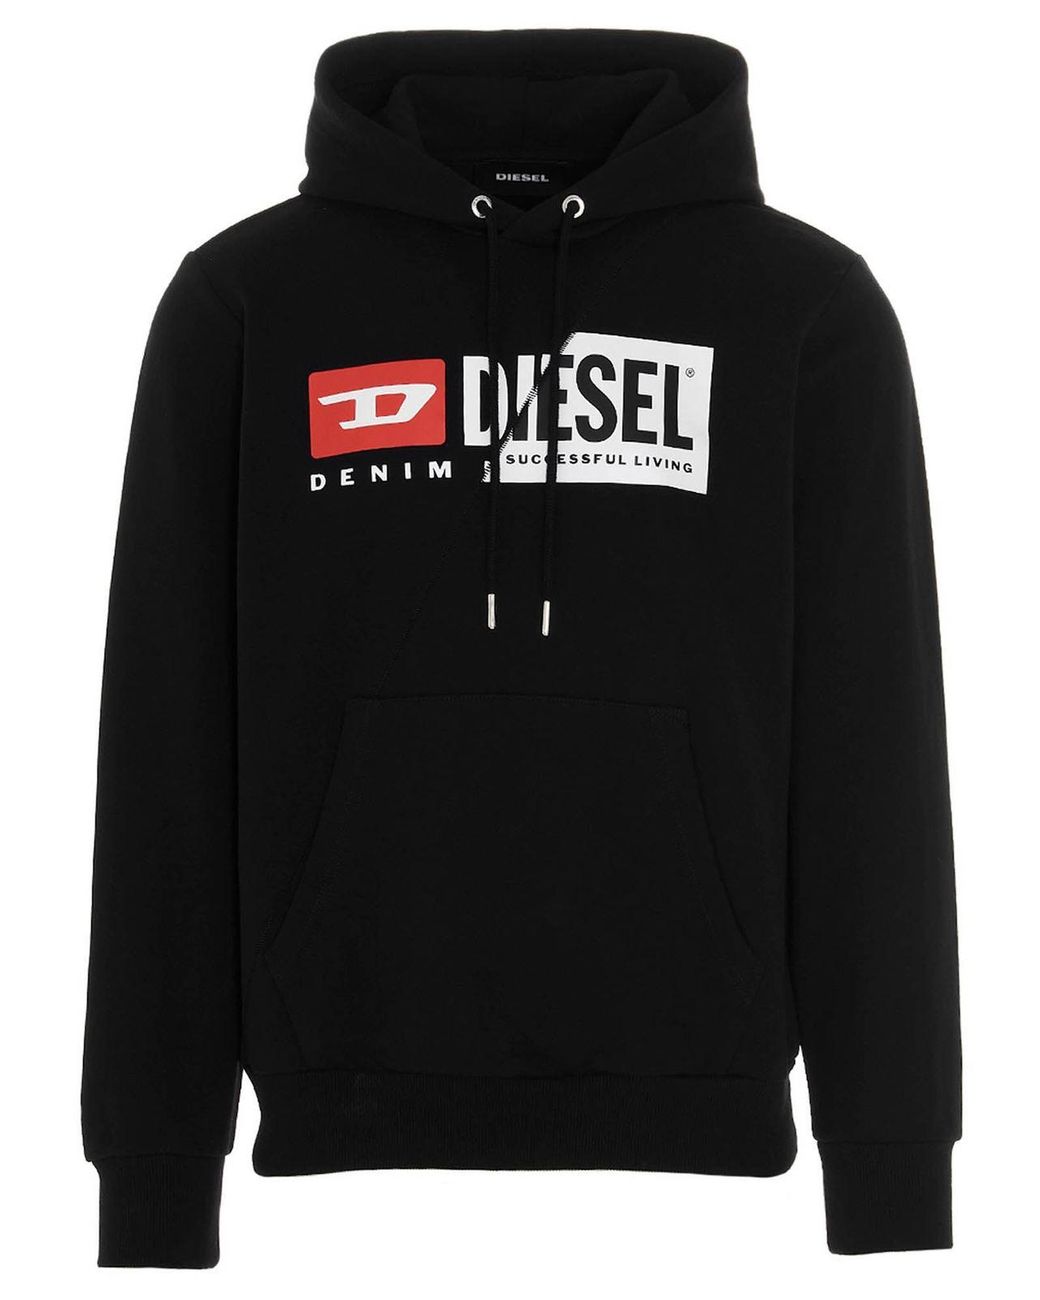 DIESEL Cotton S-girk-hood-cuty Sweatshirt in Black for Men - Lyst